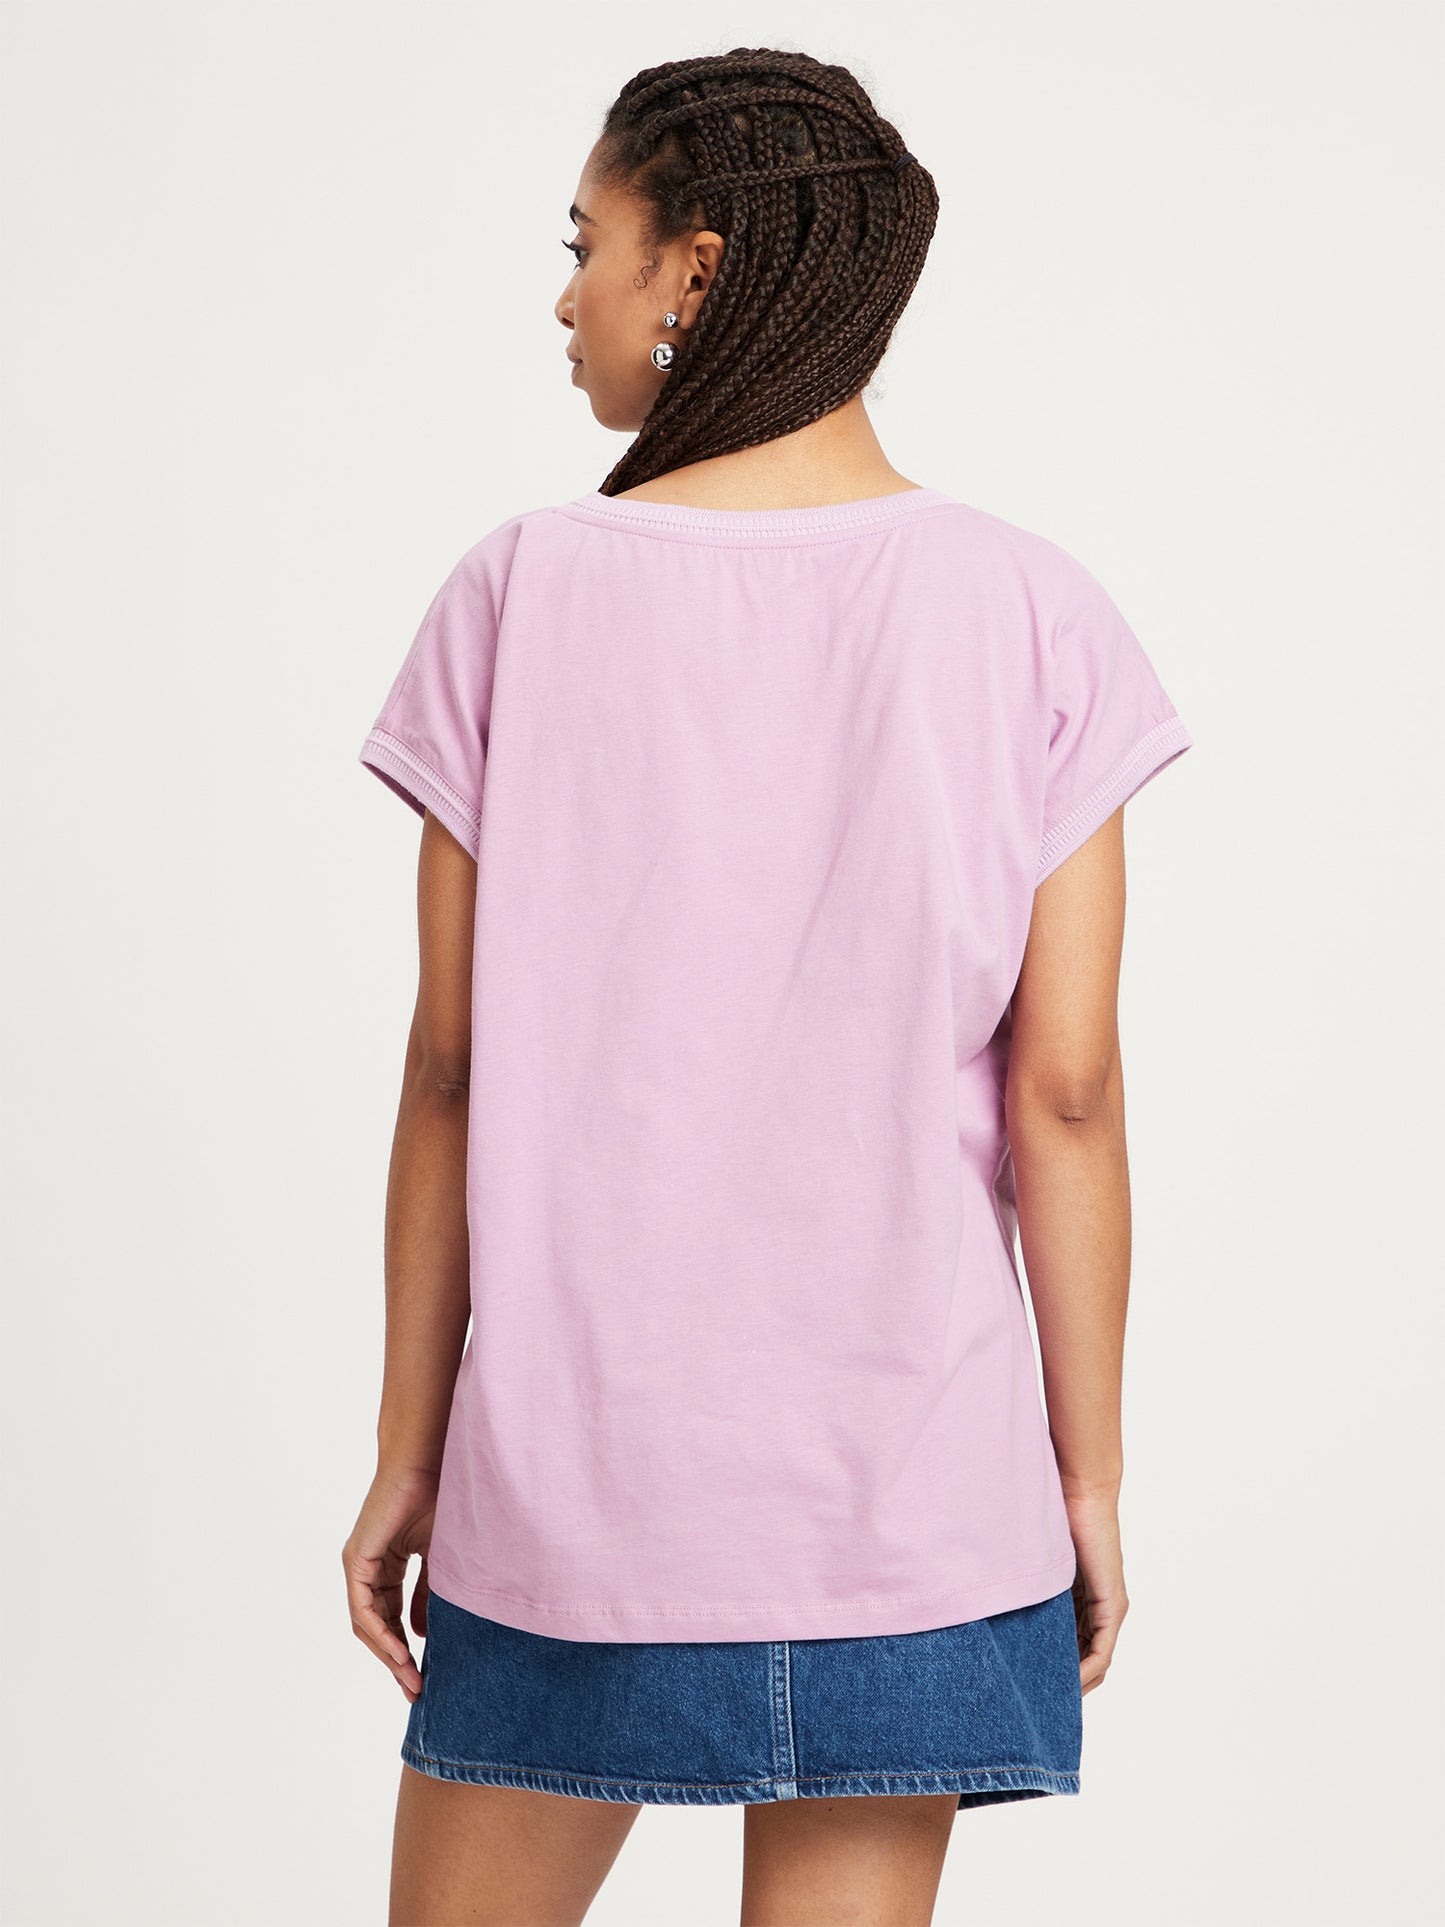 Women's regular V-neck t-shirt purple.